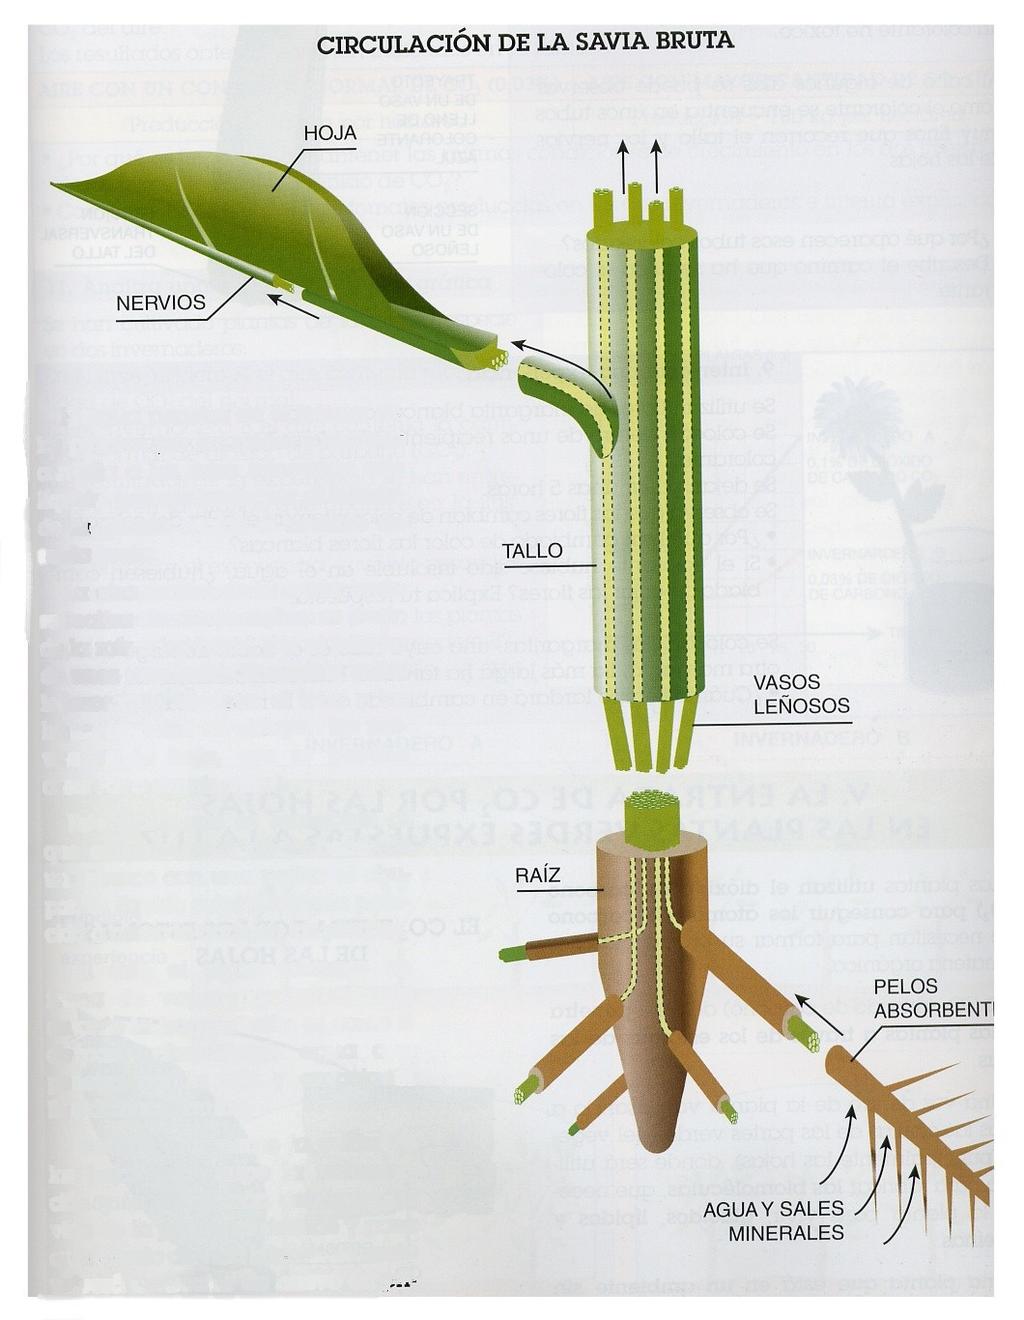 La circulación de la savia bruta se realiza de la raíz a las hojas, por el interior de unos conductos llamados vasos leñosos que recorren el tallo y las hojas.